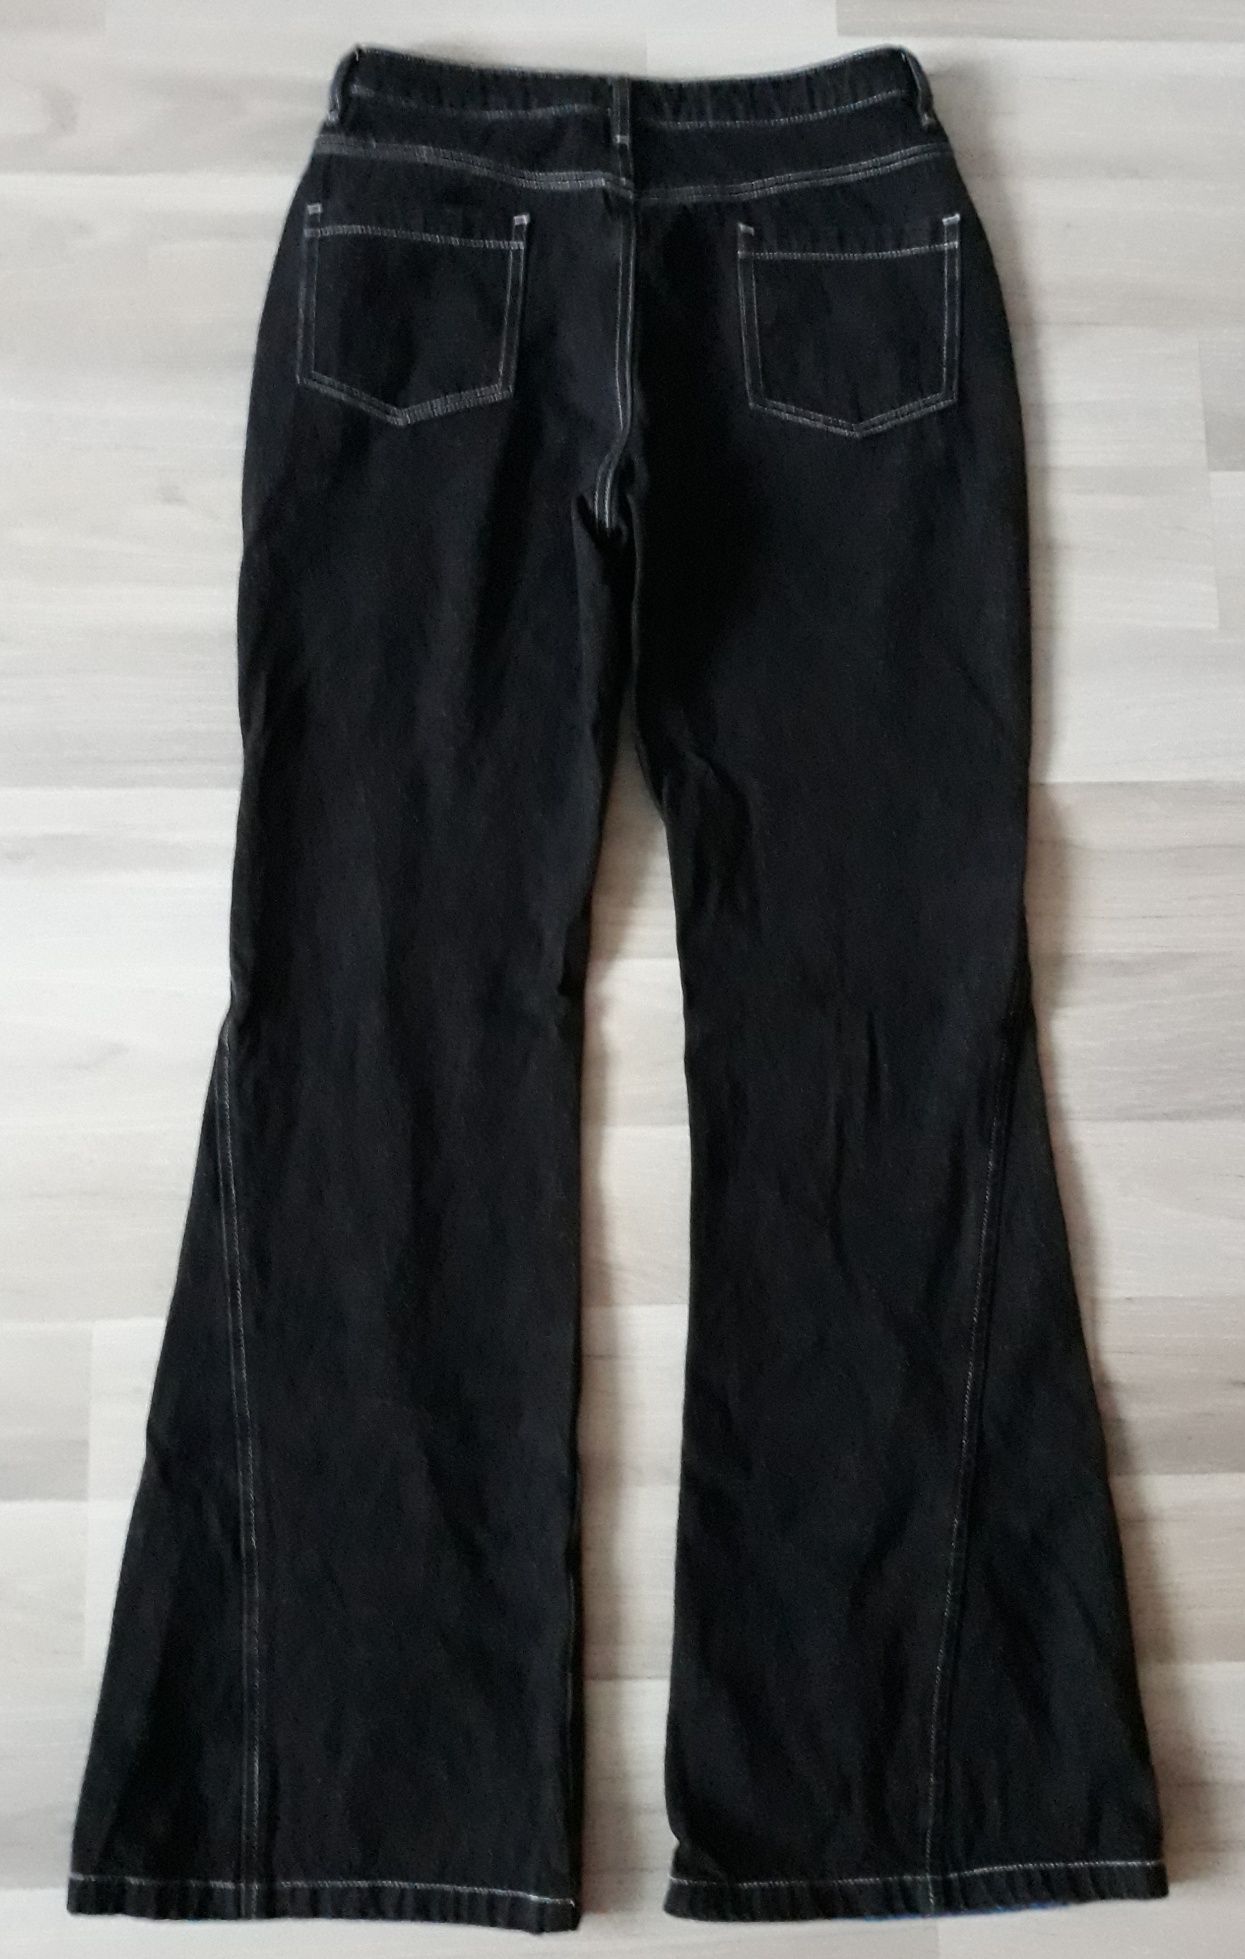 Apea Spodnie jeansowe dzwony czarne wstawki niebieskie L 40